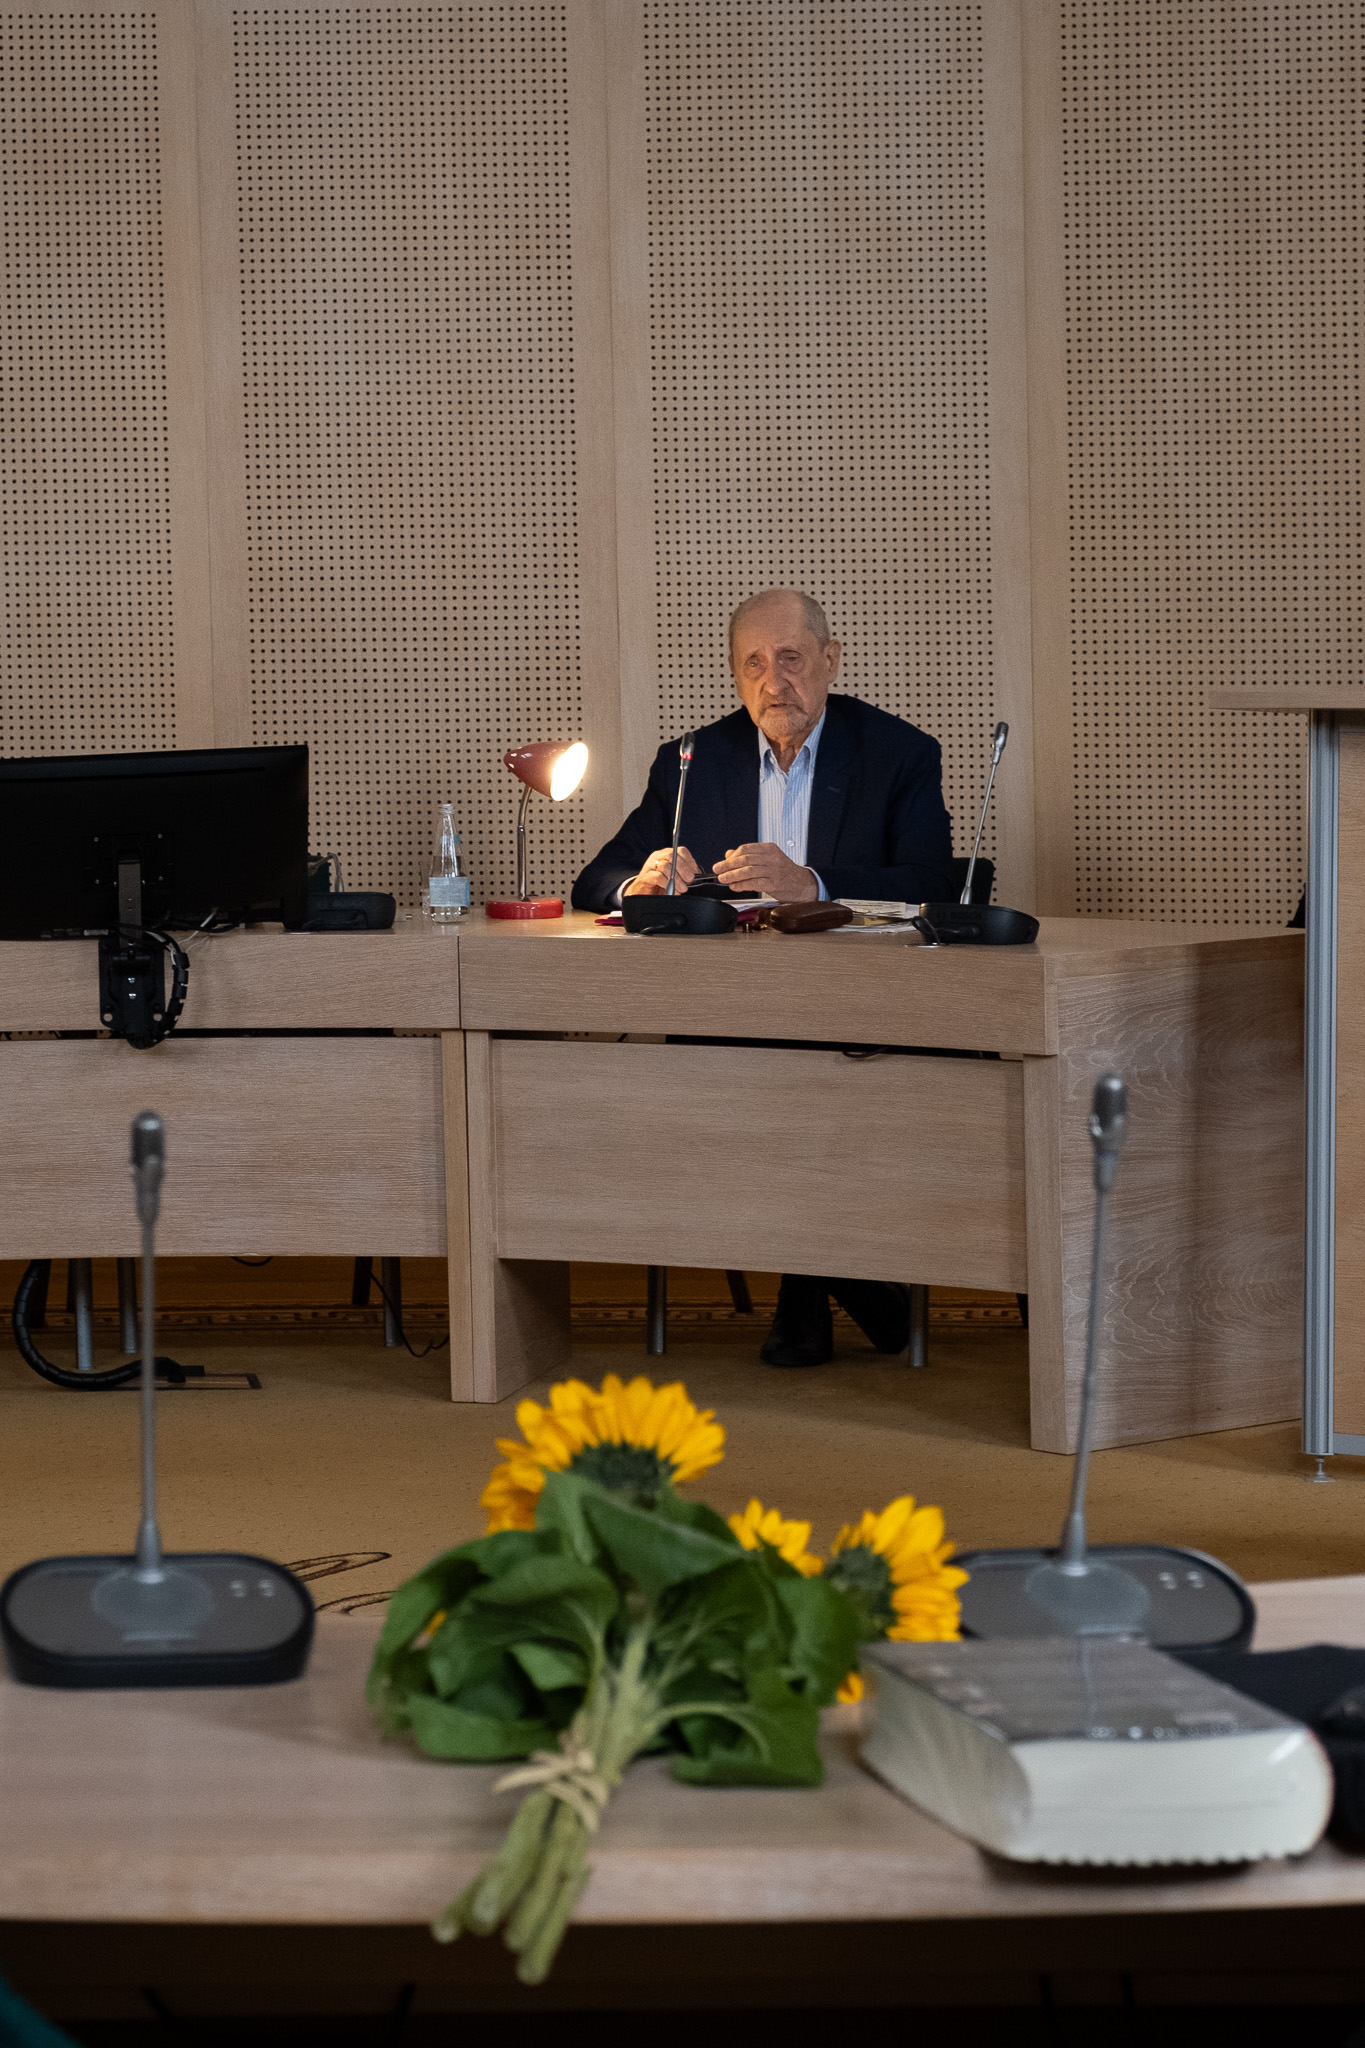 W Salonie Mickiewicza za stołem prezydialnym siedzi prof. Edward Balcerzan, obok niego zapalona lampa biurowa, przemawia do mikrofonu. Na pierwszym planie zdjęcia widać stół, na którym leży bukiet słoneczników.